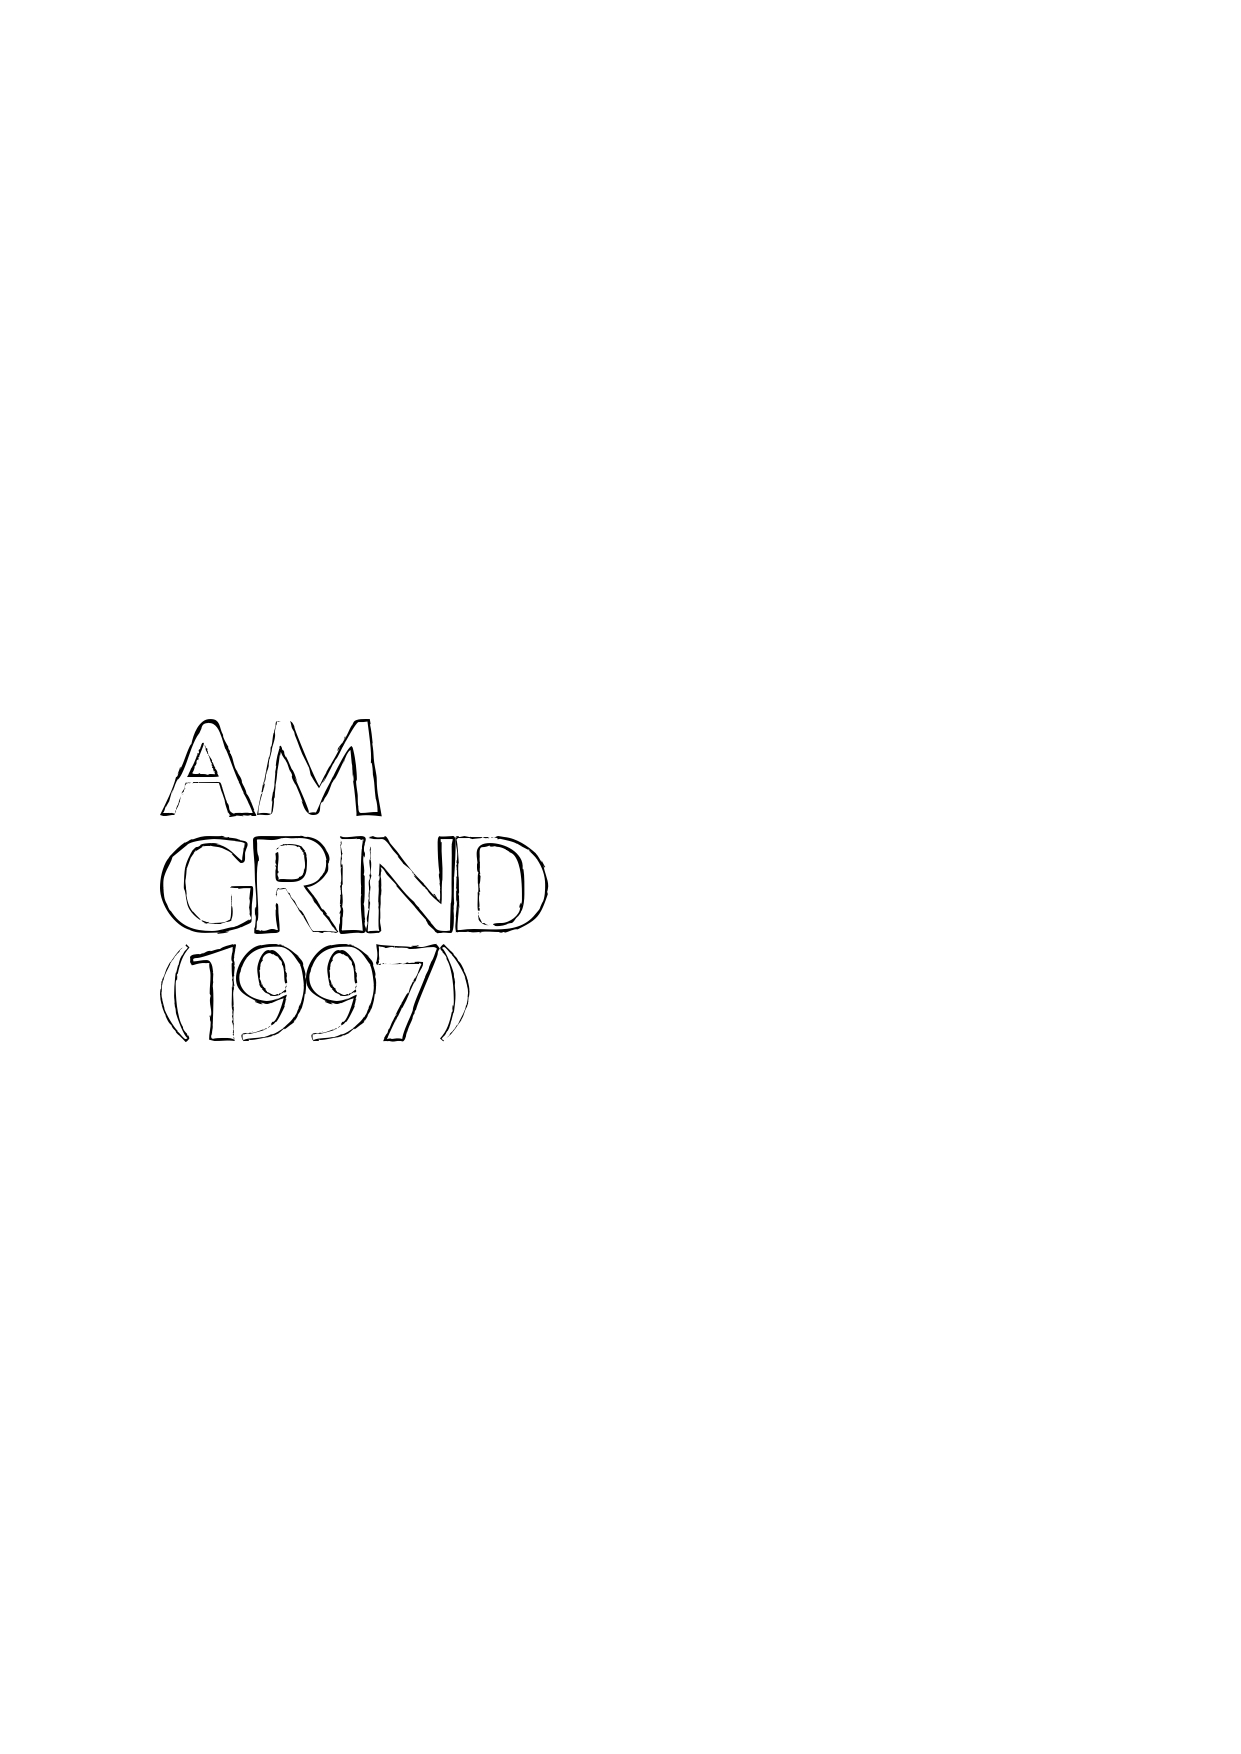 AM(grind)1997